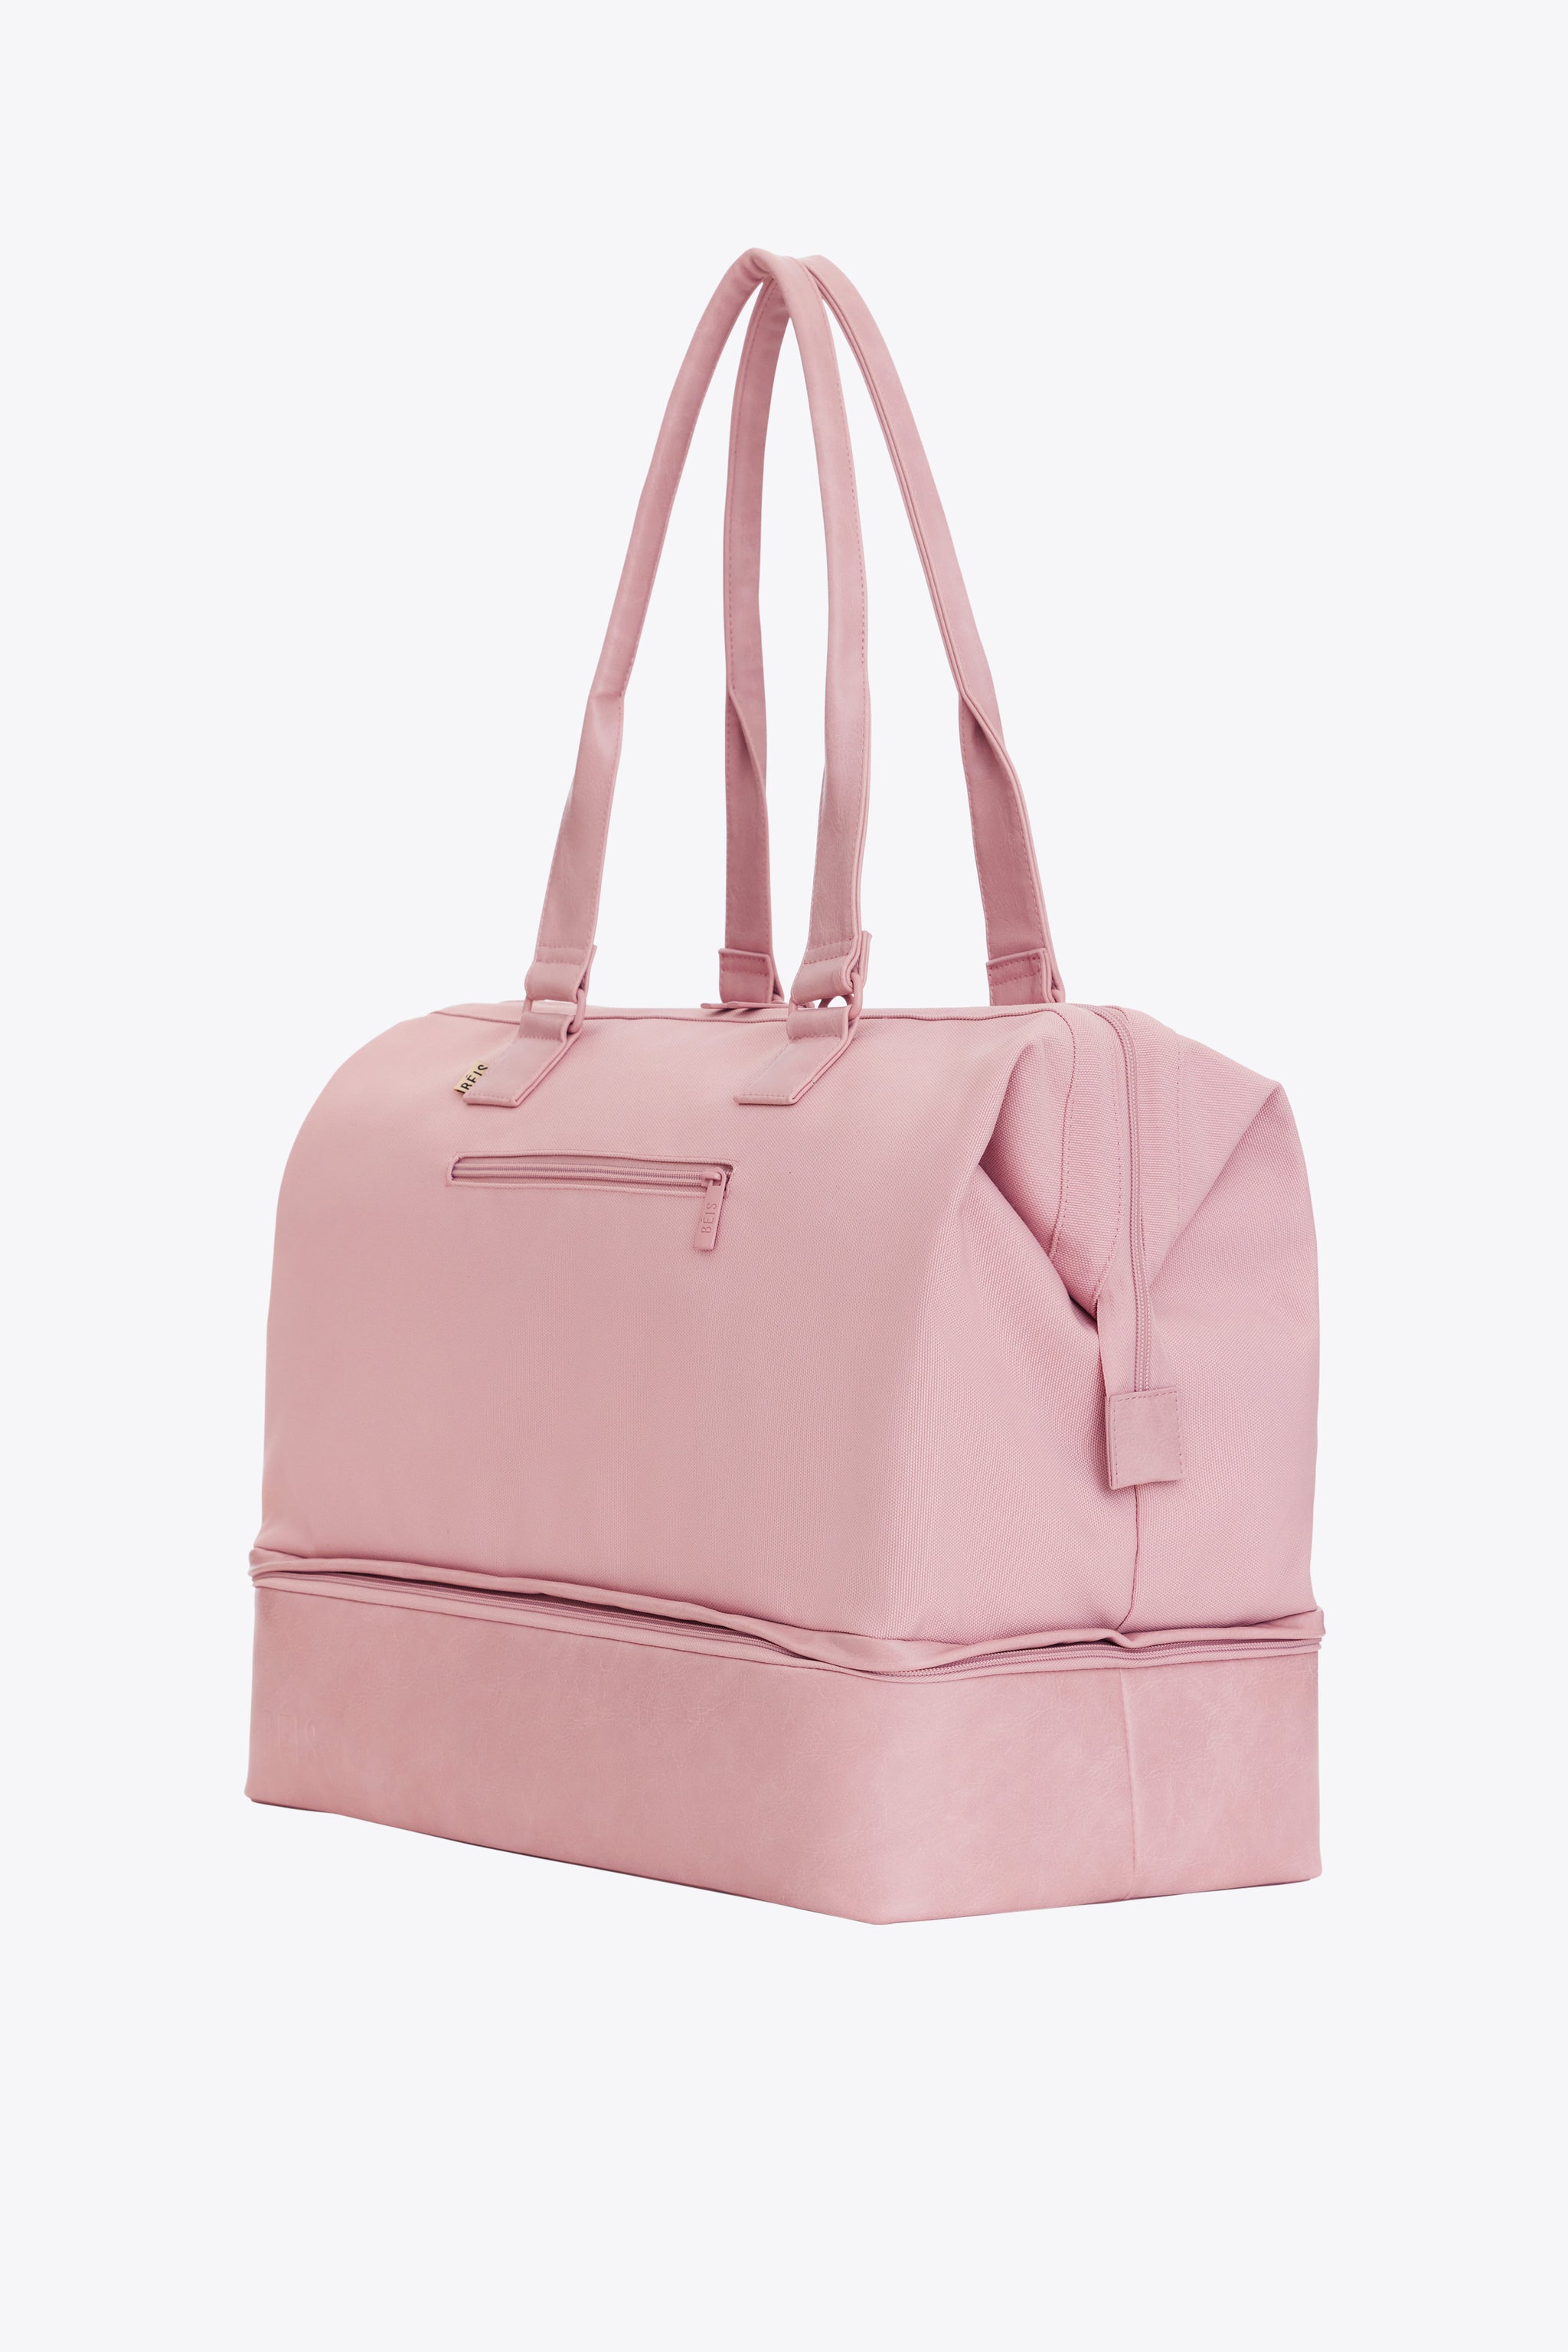 BÉIS 'The Convertible Weekender' in Atlas Pink - Pink Weekender Bag ...